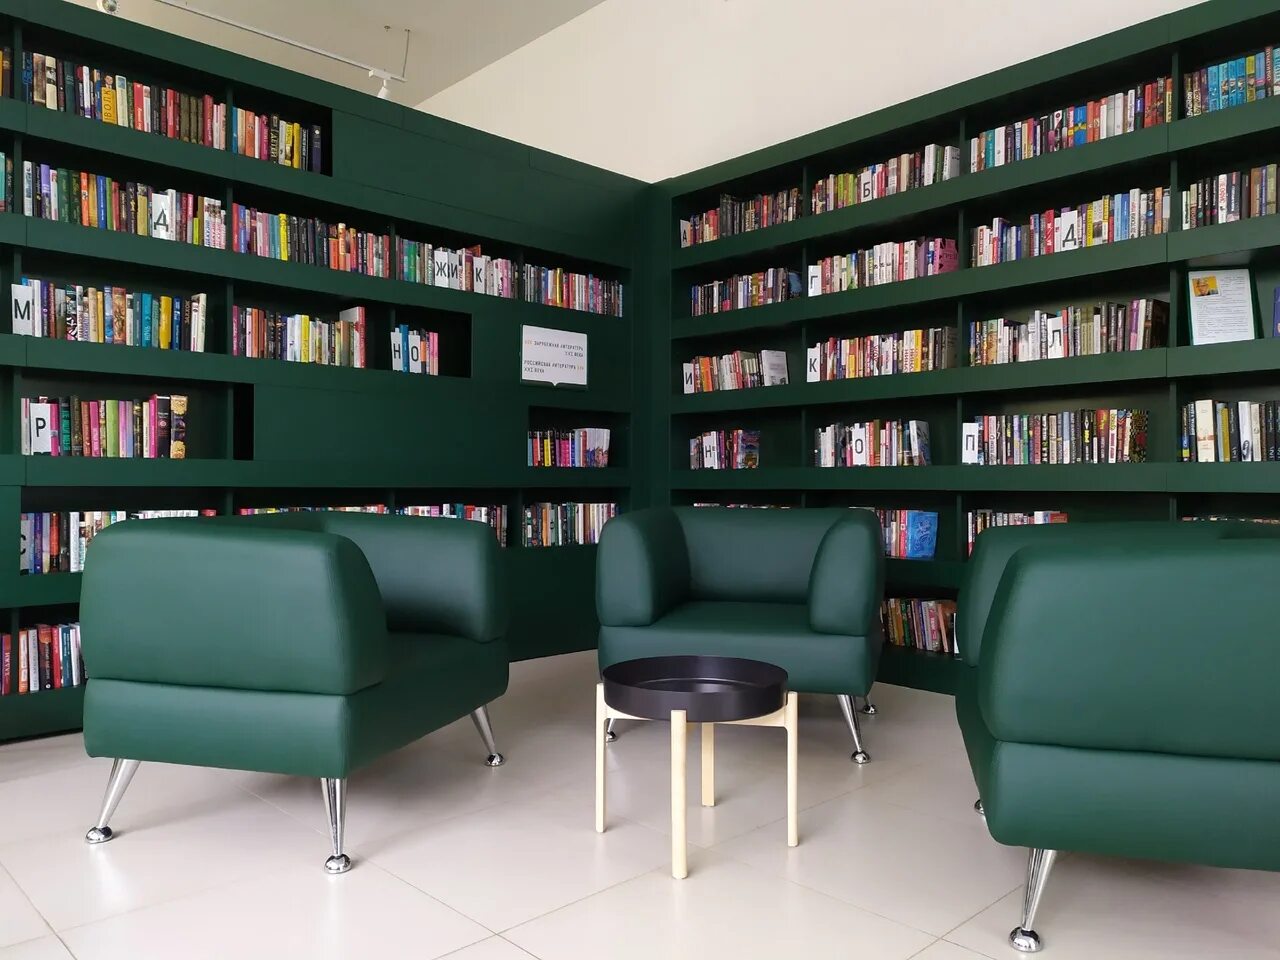 Зеленая библиотека. Модельные библиотеки Коми. Библиотека нового поколения. Модельная библиотека зелёная.